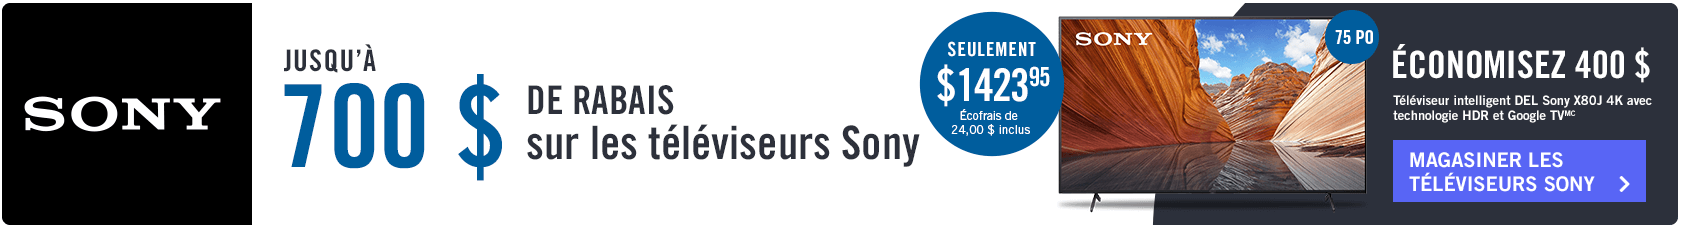 Jusqu'a 700 $ de rabais sur les téléviseurs Sony